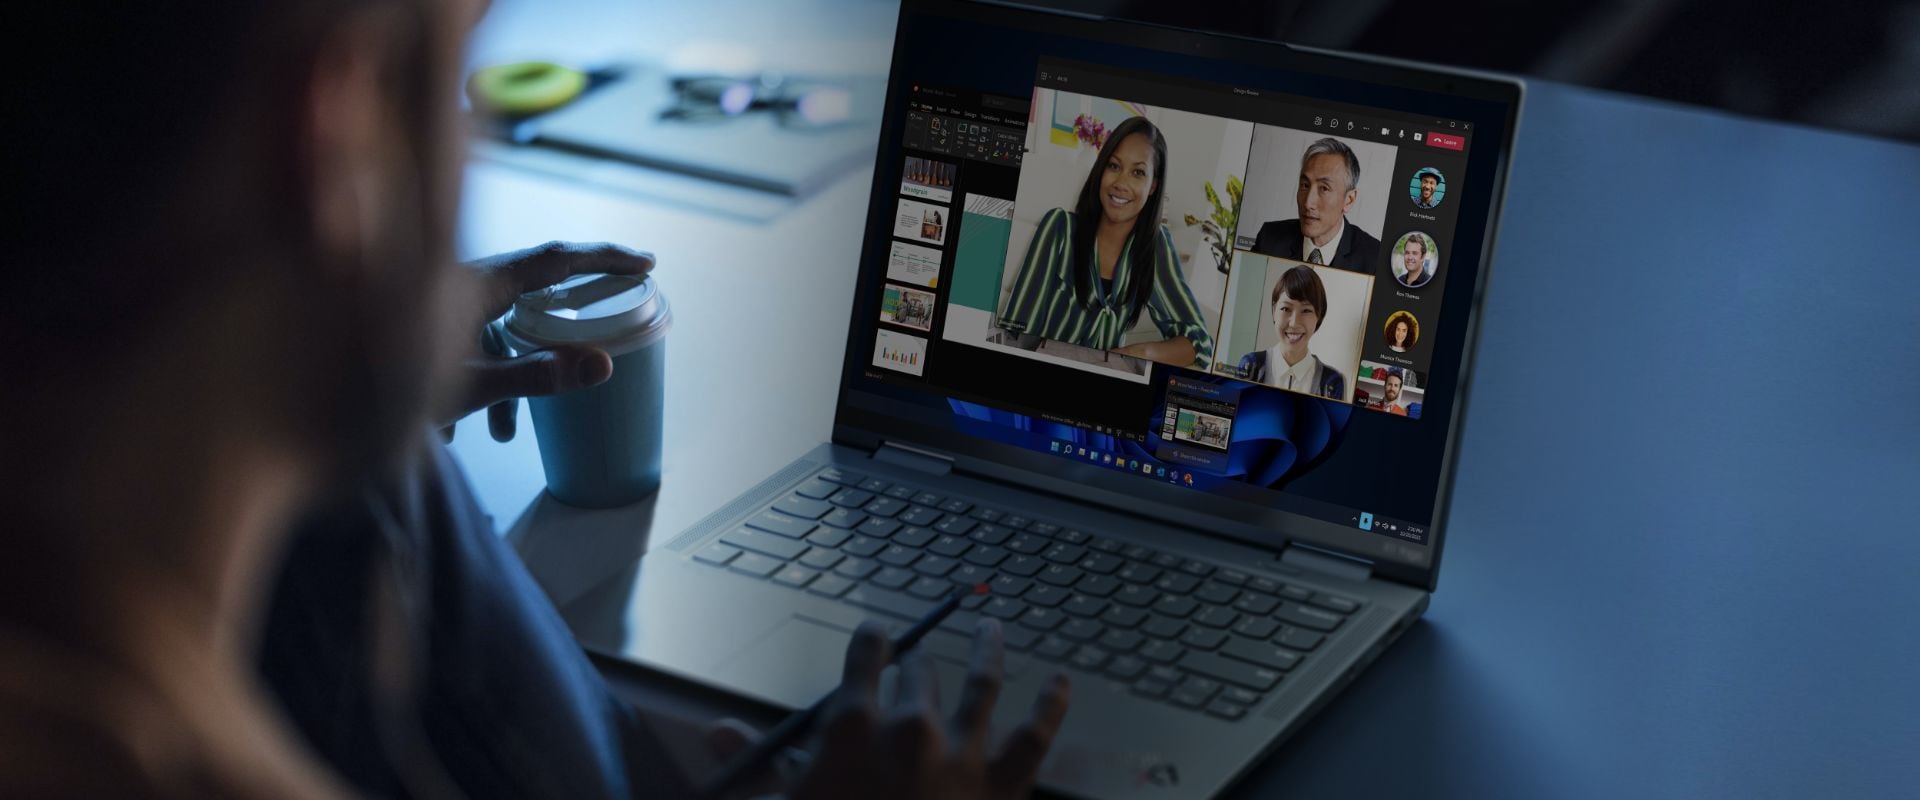 Lenovo ThinkPad: Business Laptops Designed for Performance | Lenovo US